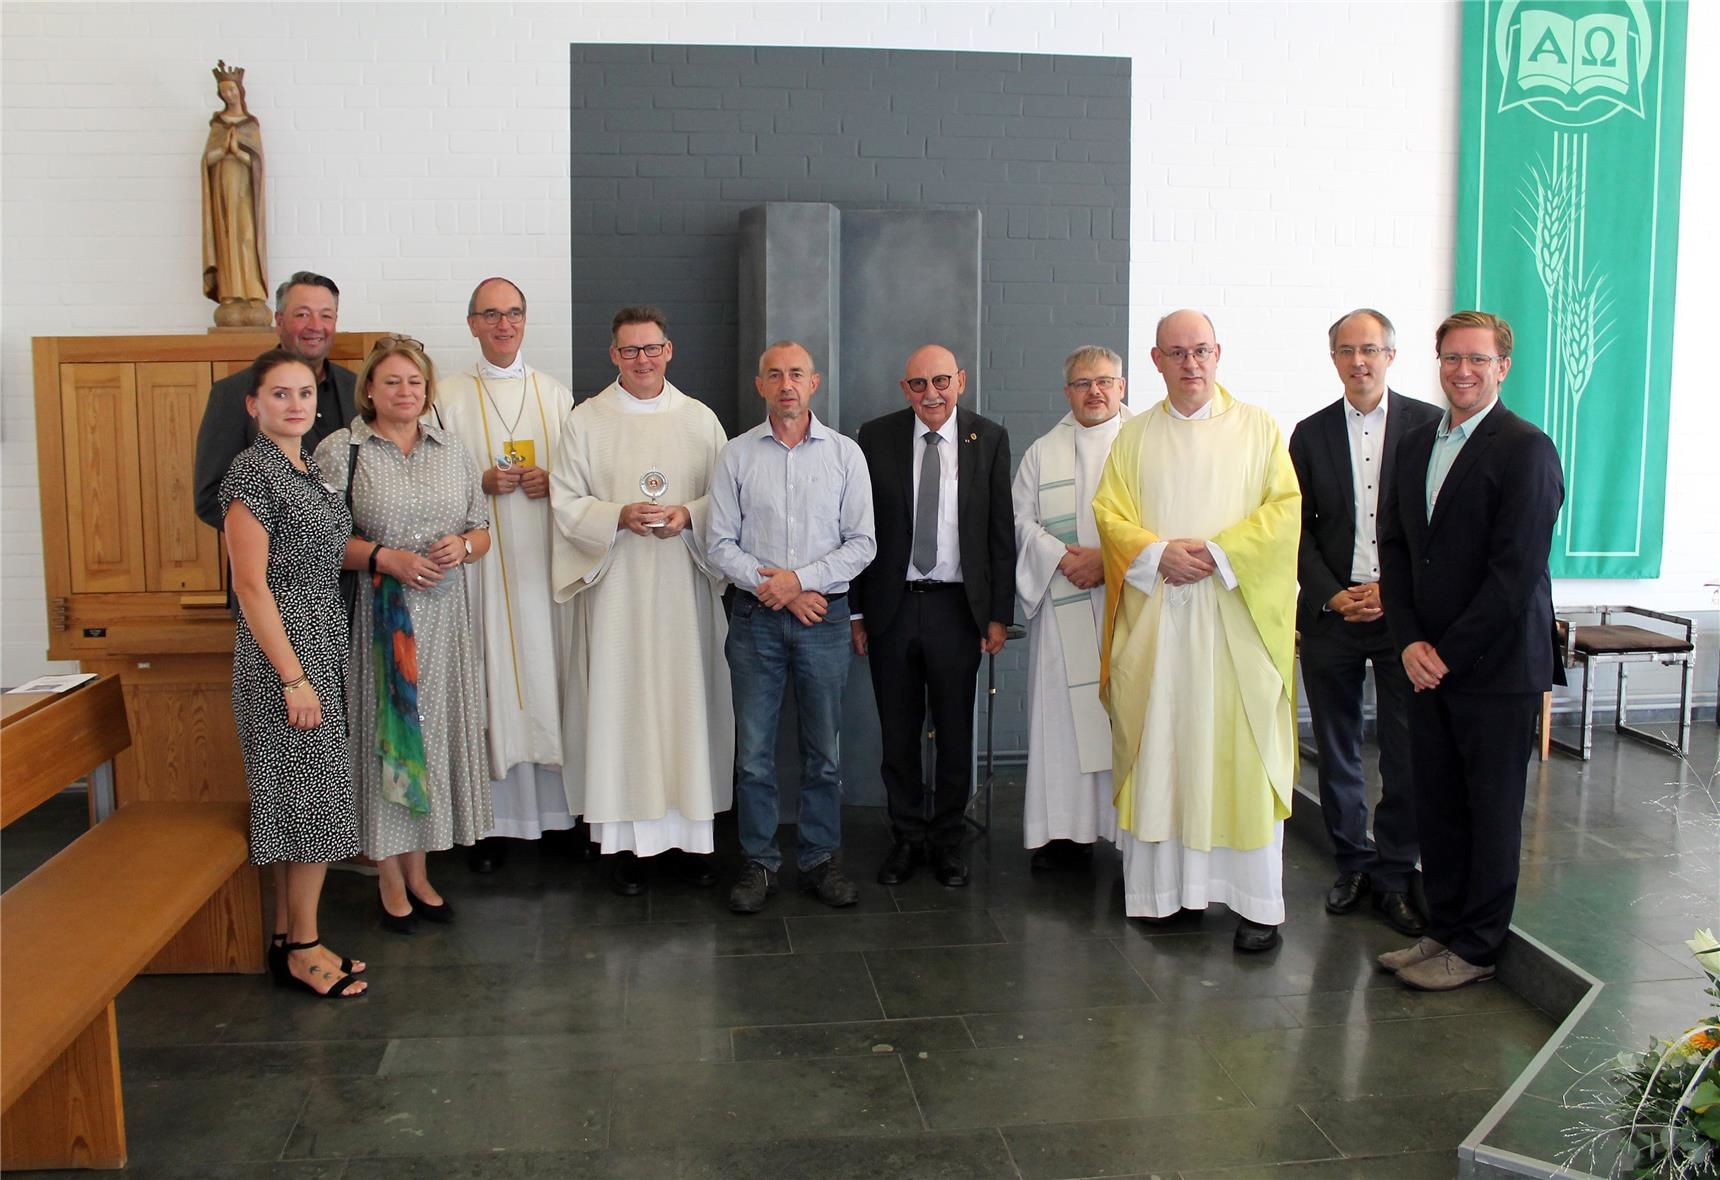 Gruppe mit Geistlichen in der Kapelle St. Nikolaus (Erik Lehwald / Caritasverband Düren-Jülich)